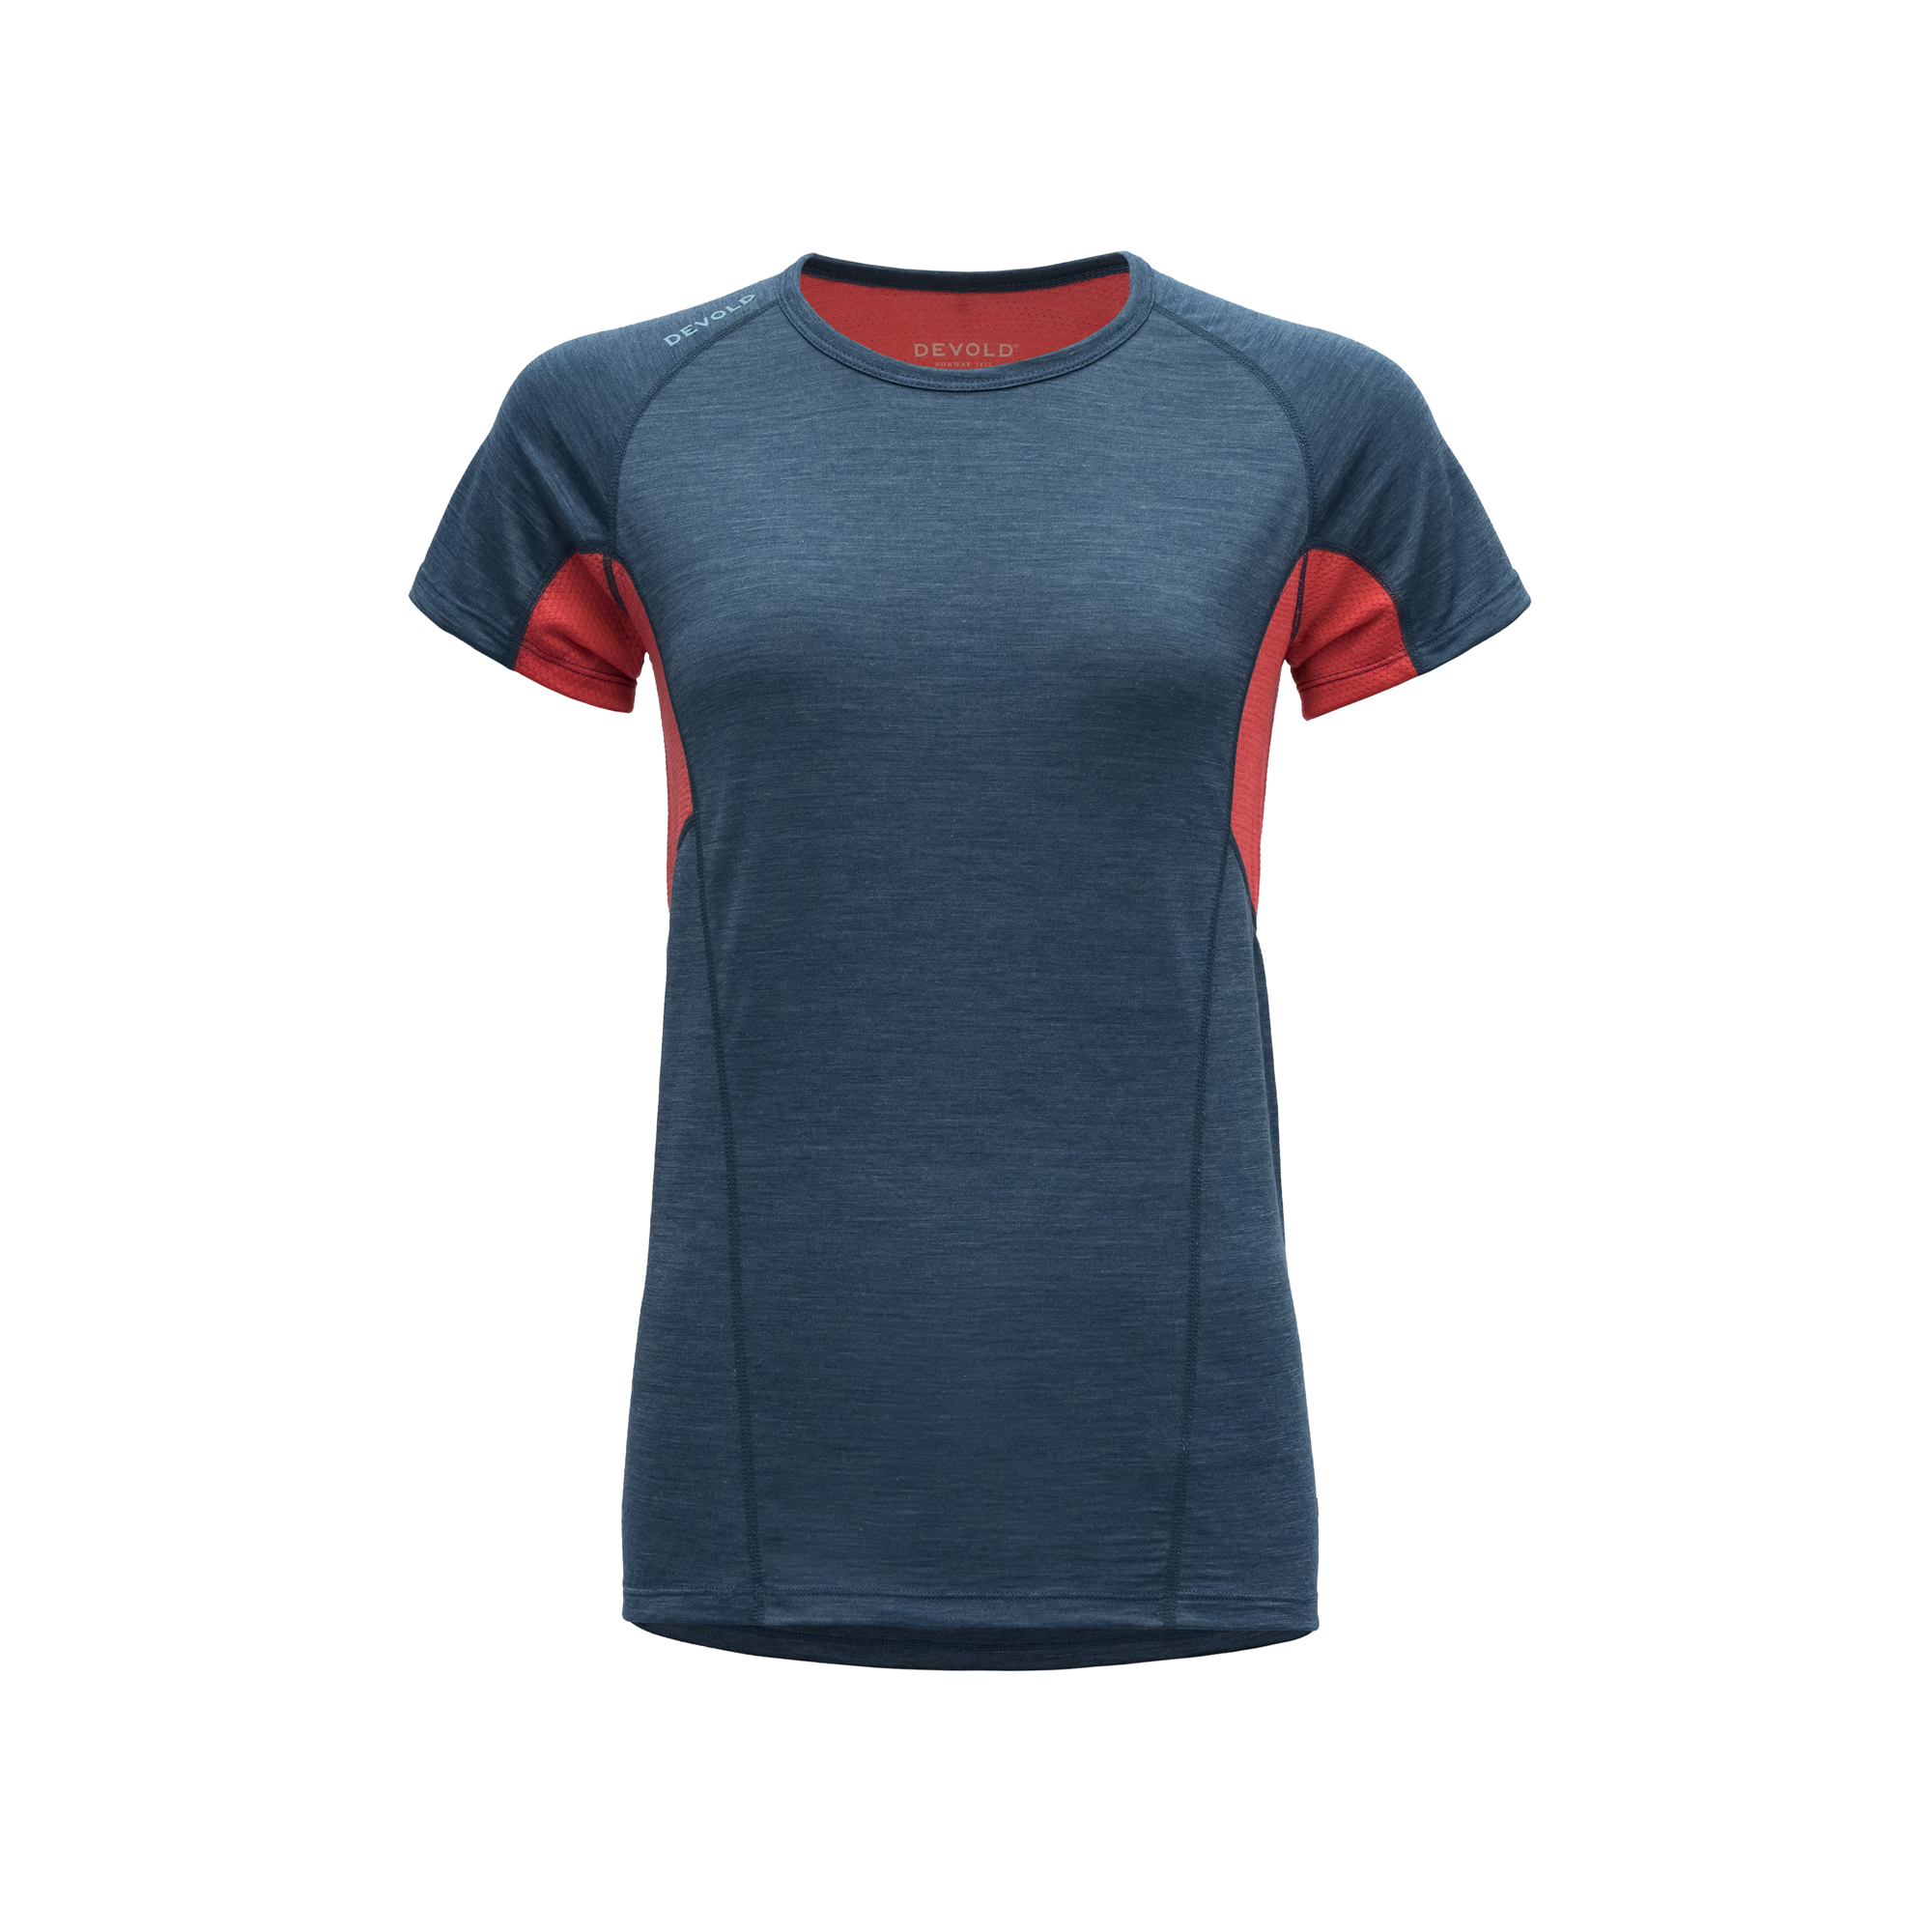 Devold Merino 130 tričko s krátkým rukávem - dámské - oranžová/modrá Velikost: M